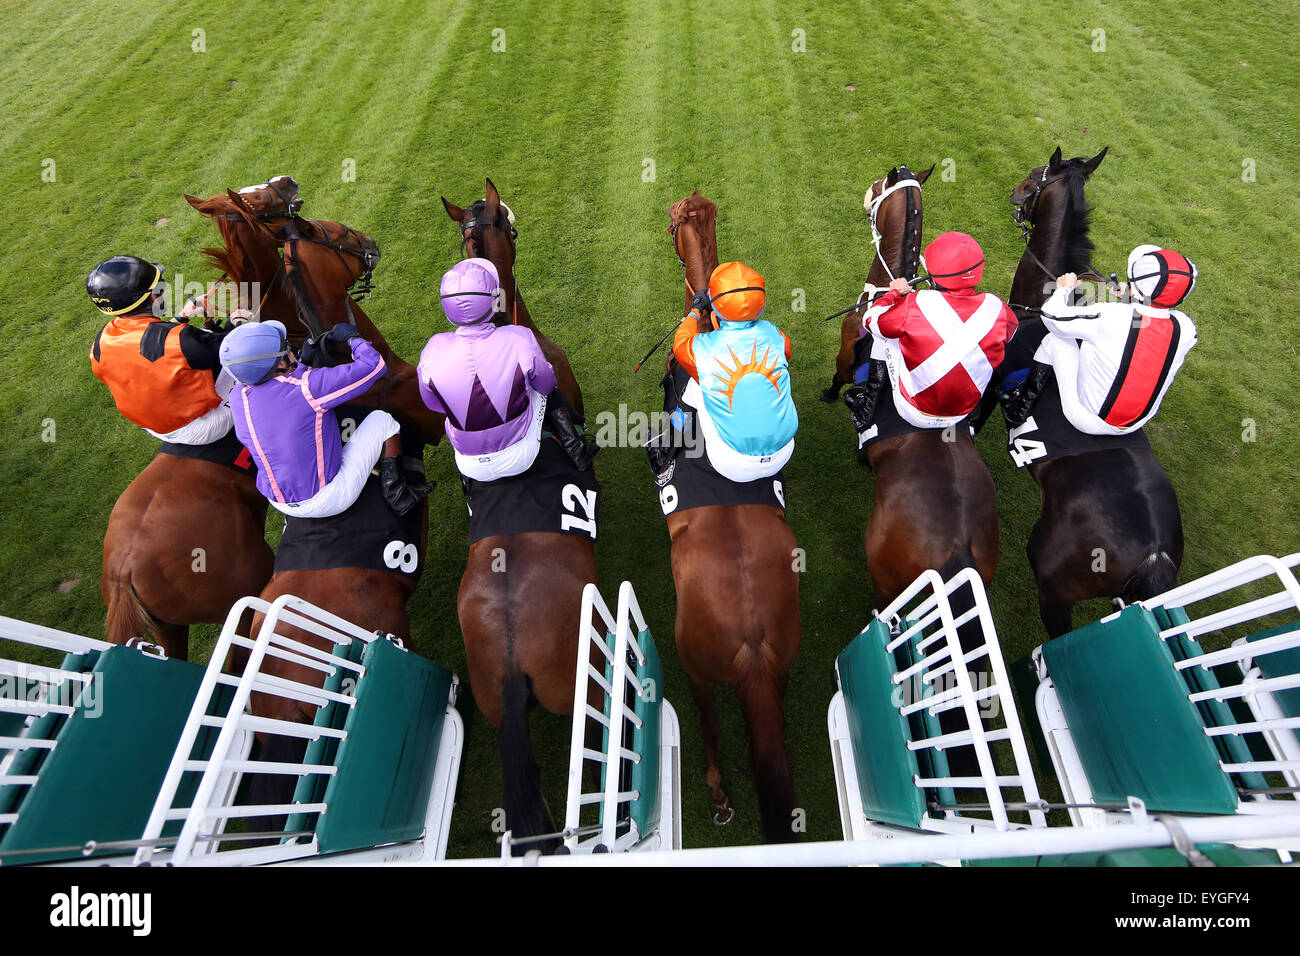 Hamburg, Germany, horses and jockeys at the start of a horse race Stock Photo